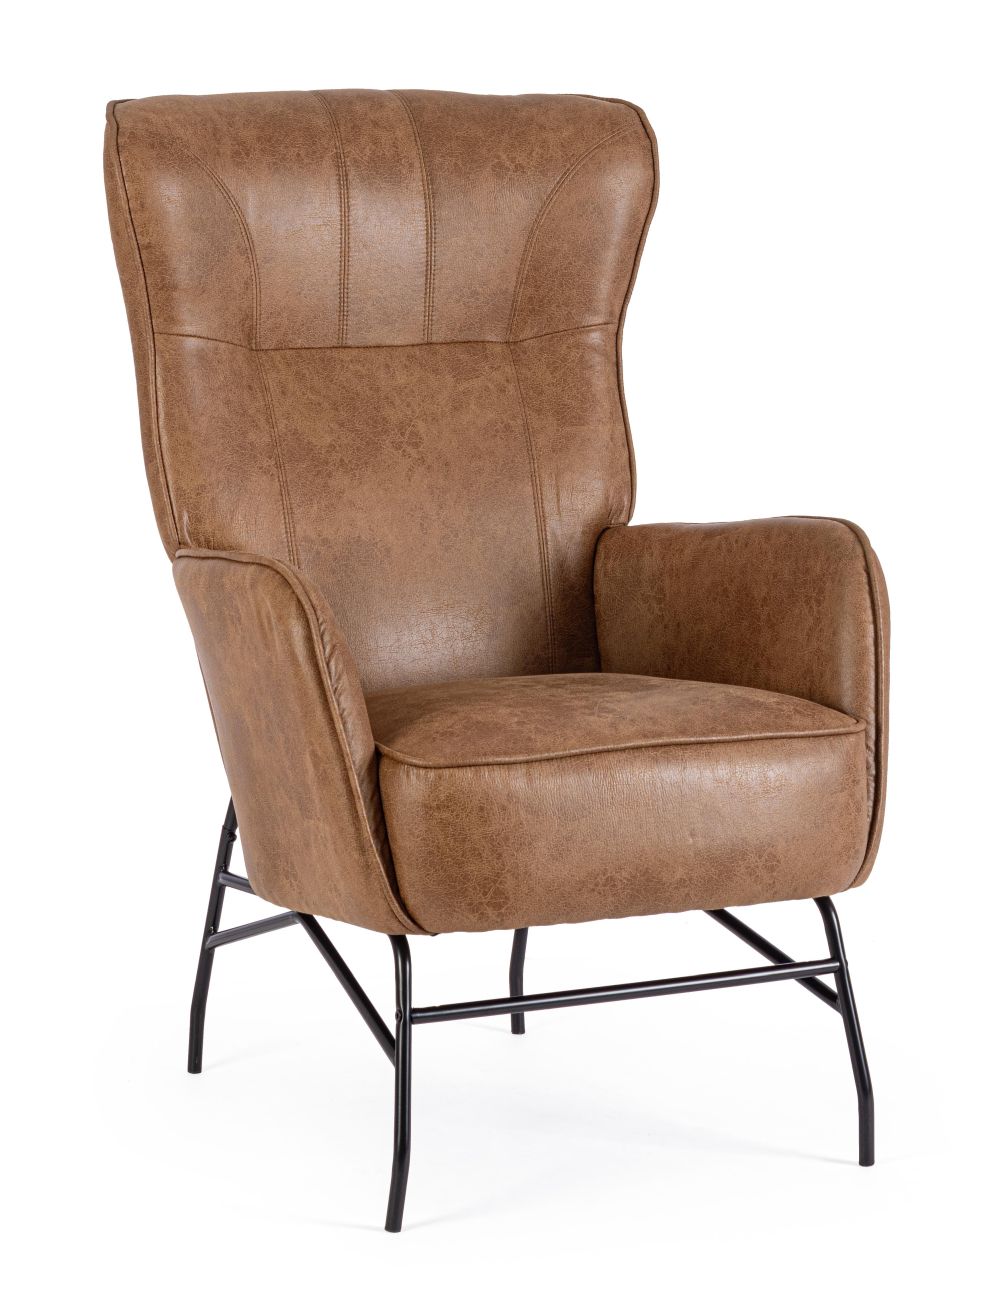 Der Sessel Nasira überzeugt mit seinem modernen Stil. Gefertigt wurde er aus Kunstleder, welches einen braunen Farbton besitzt. Das Gestell ist aus Metall und hat eine schwarze Farbe. Der Sessel besitzt eine Sitzhöhe von 50 cm.